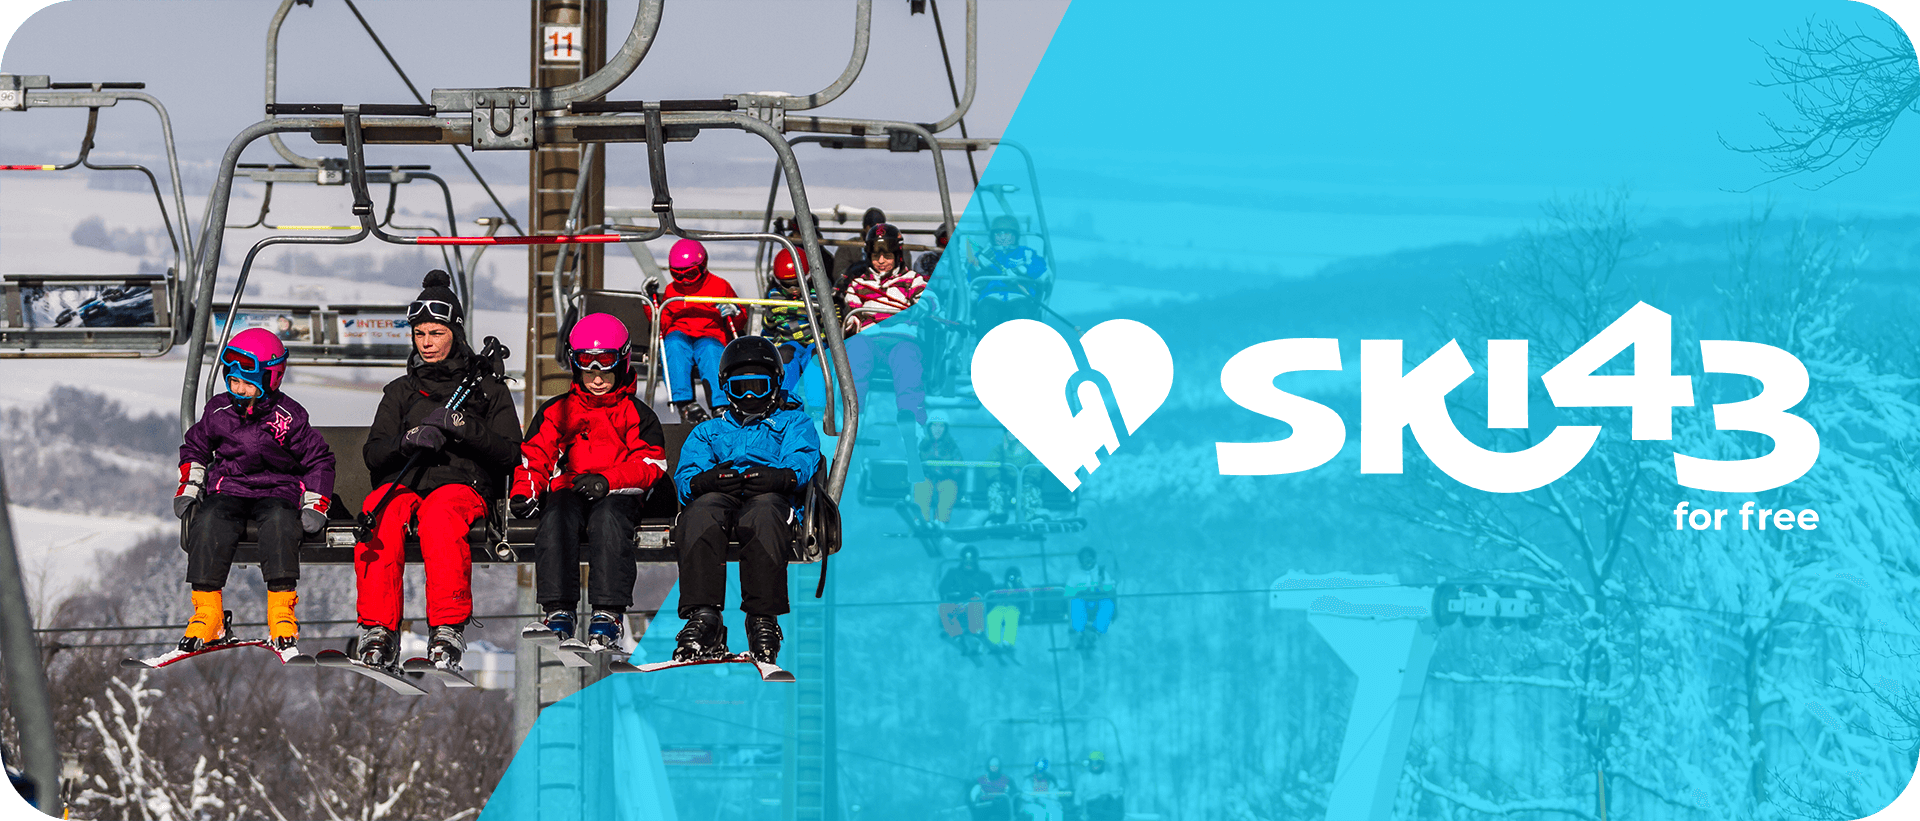 A Ski43 (Ski for free) célja az ismerkedés a sísporttal, a kedvcsinálás és az élményszerzés